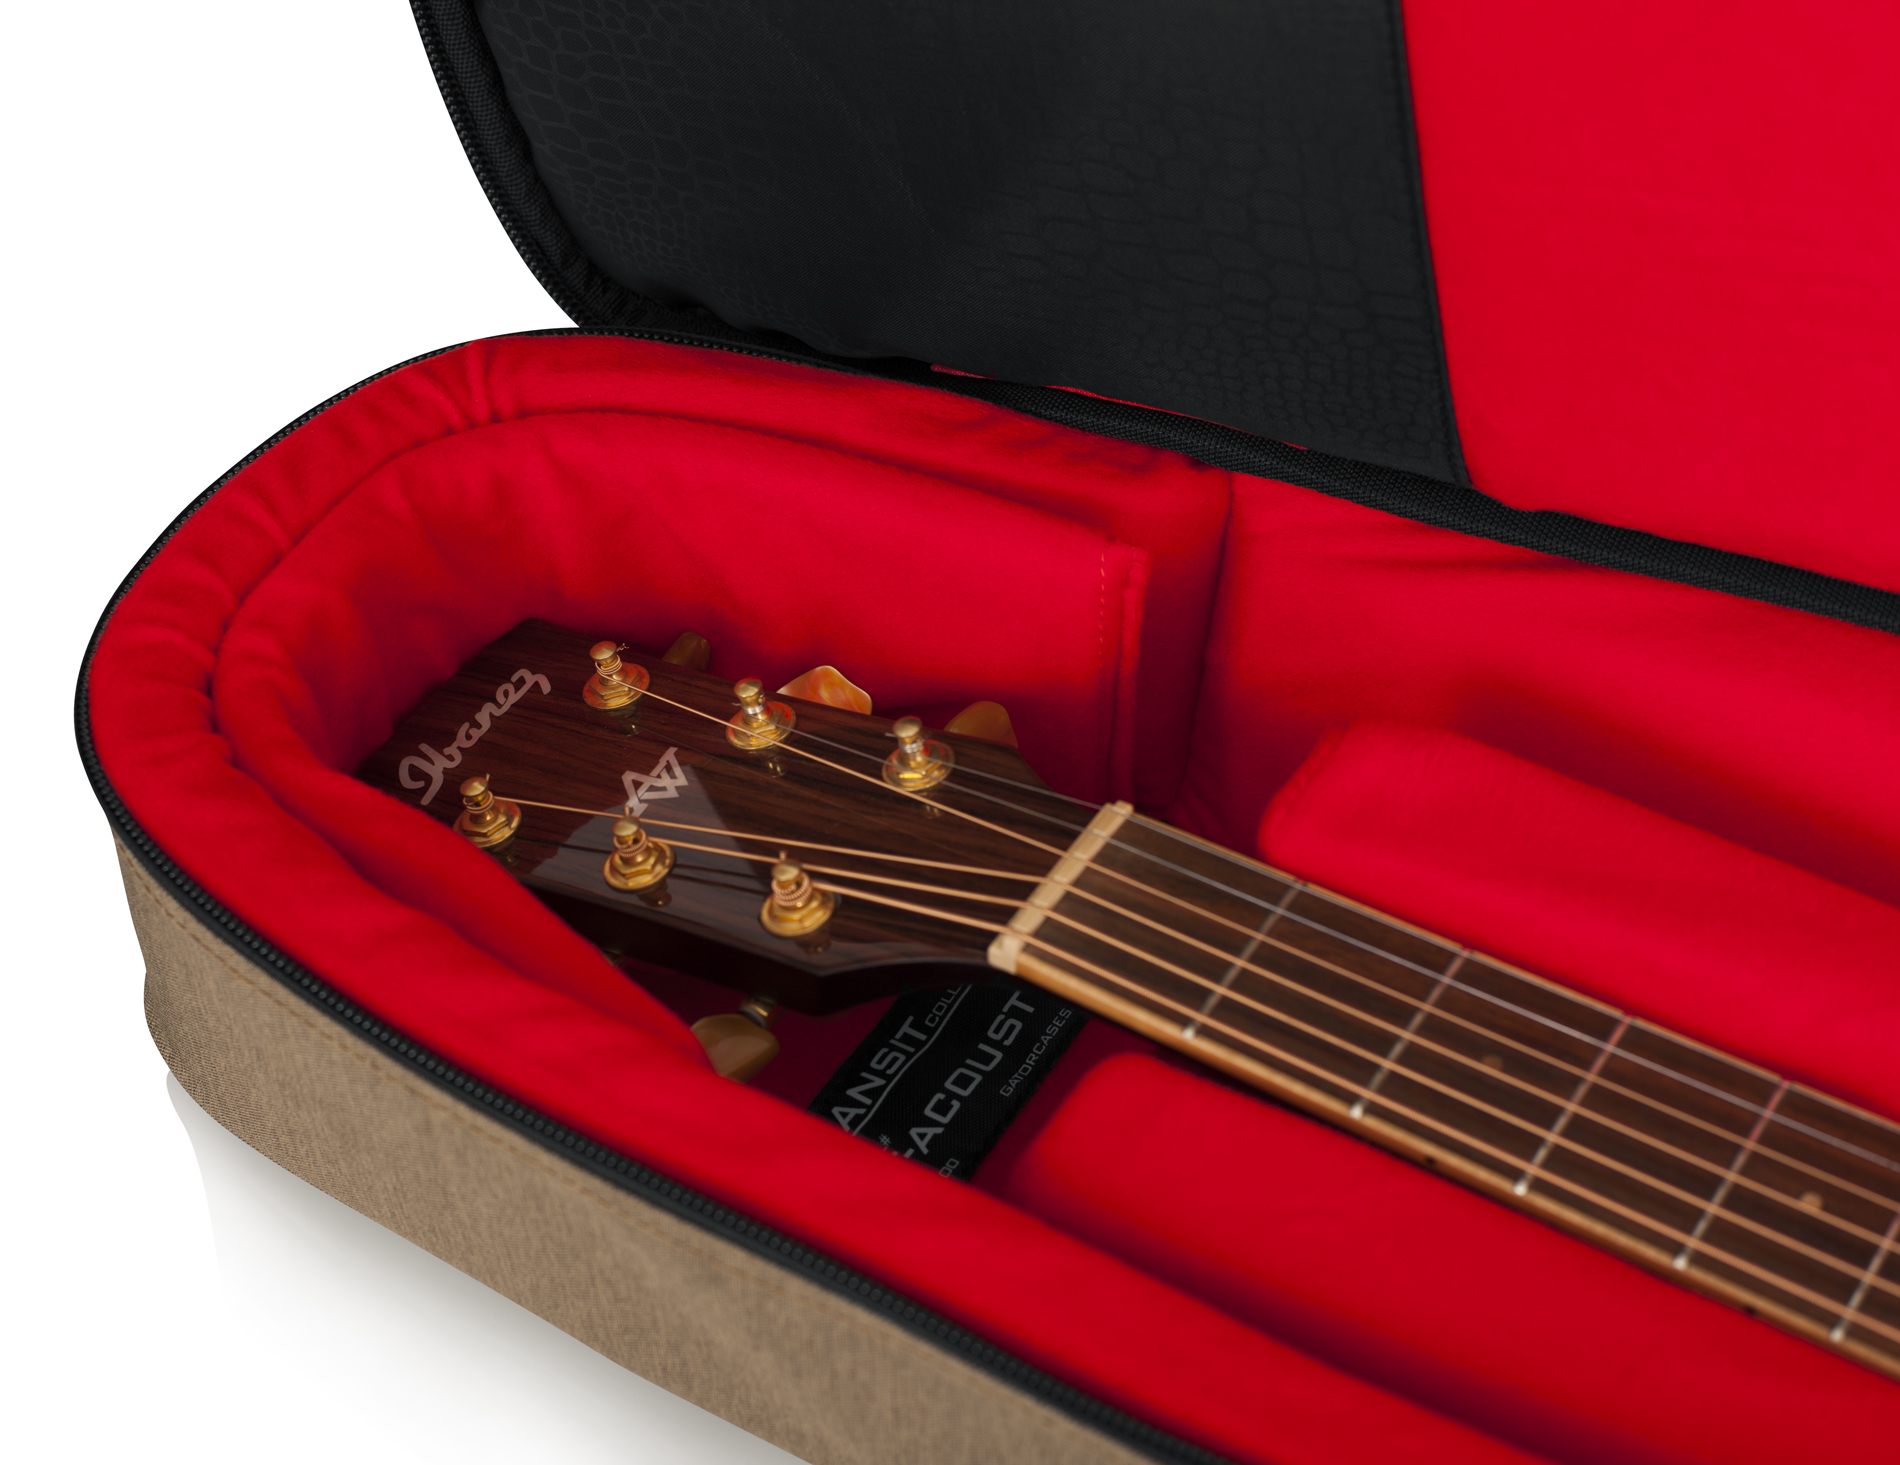 Transit Acoustic Guitar Bag; Tan-GT-ACOUSTIC-TAN